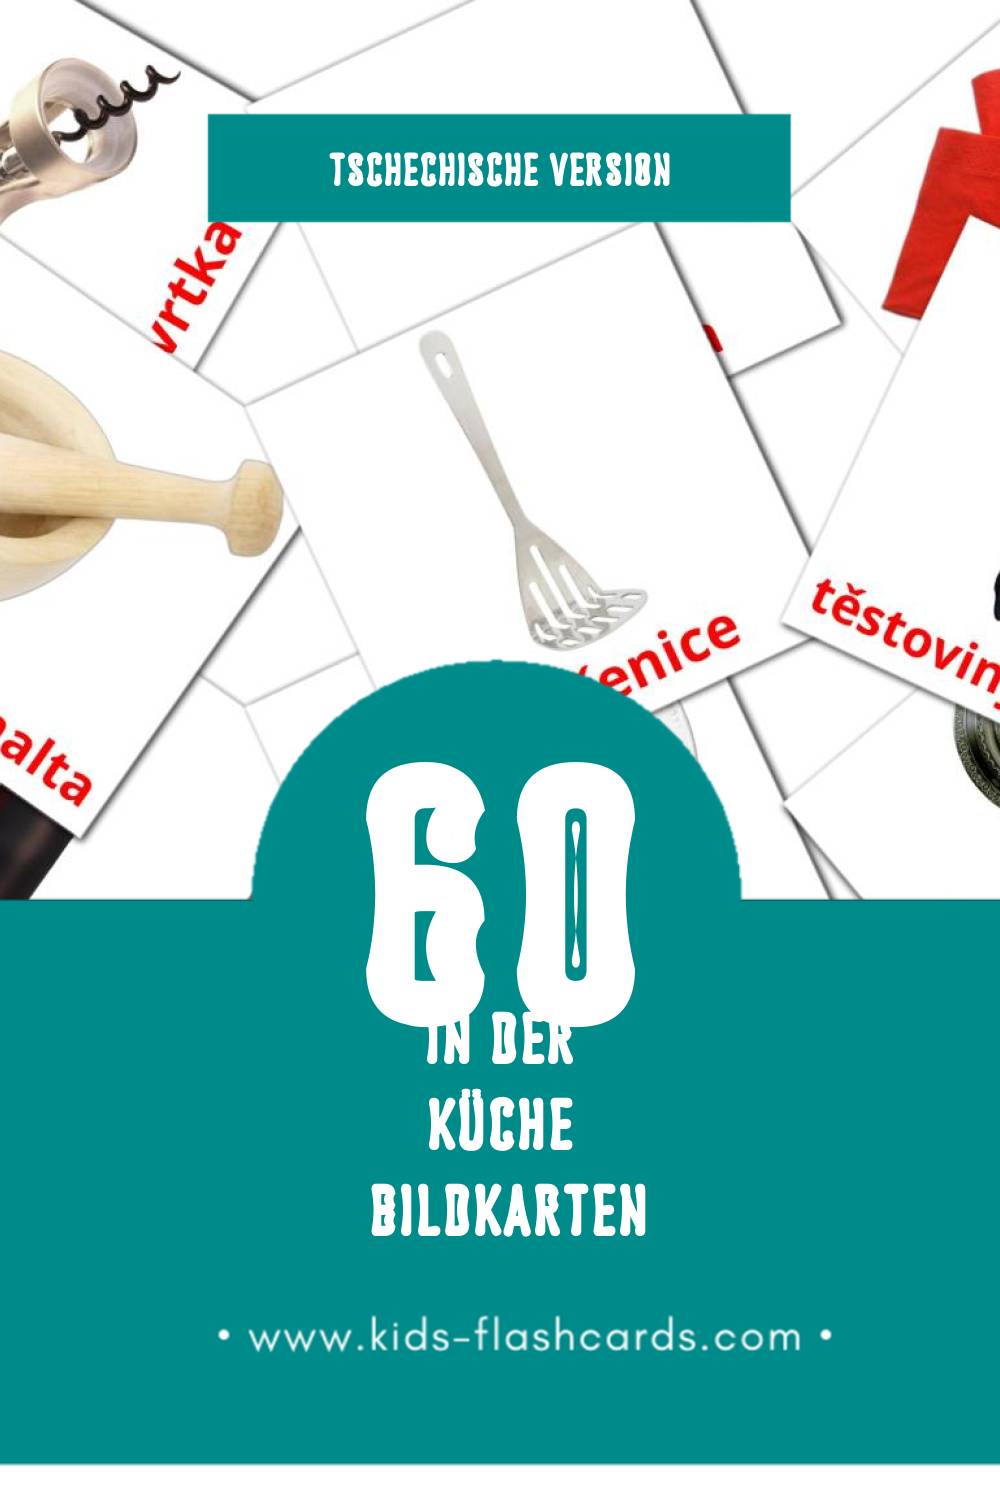 Visual Kuchyně Flashcards für Kleinkinder (60 Karten in Tschechisch)